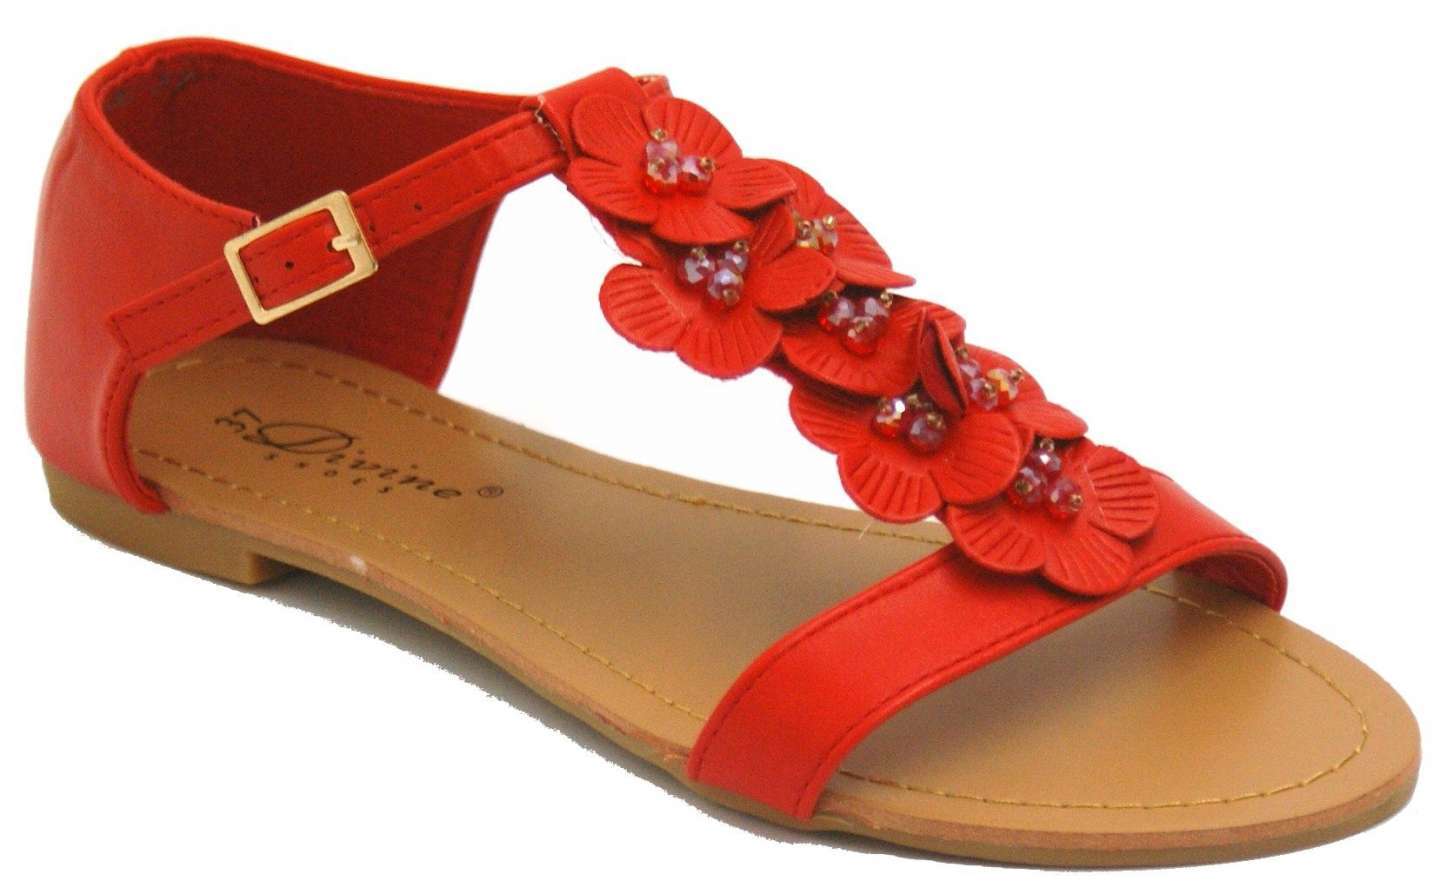 Sandali rossi con fiorellini applicati